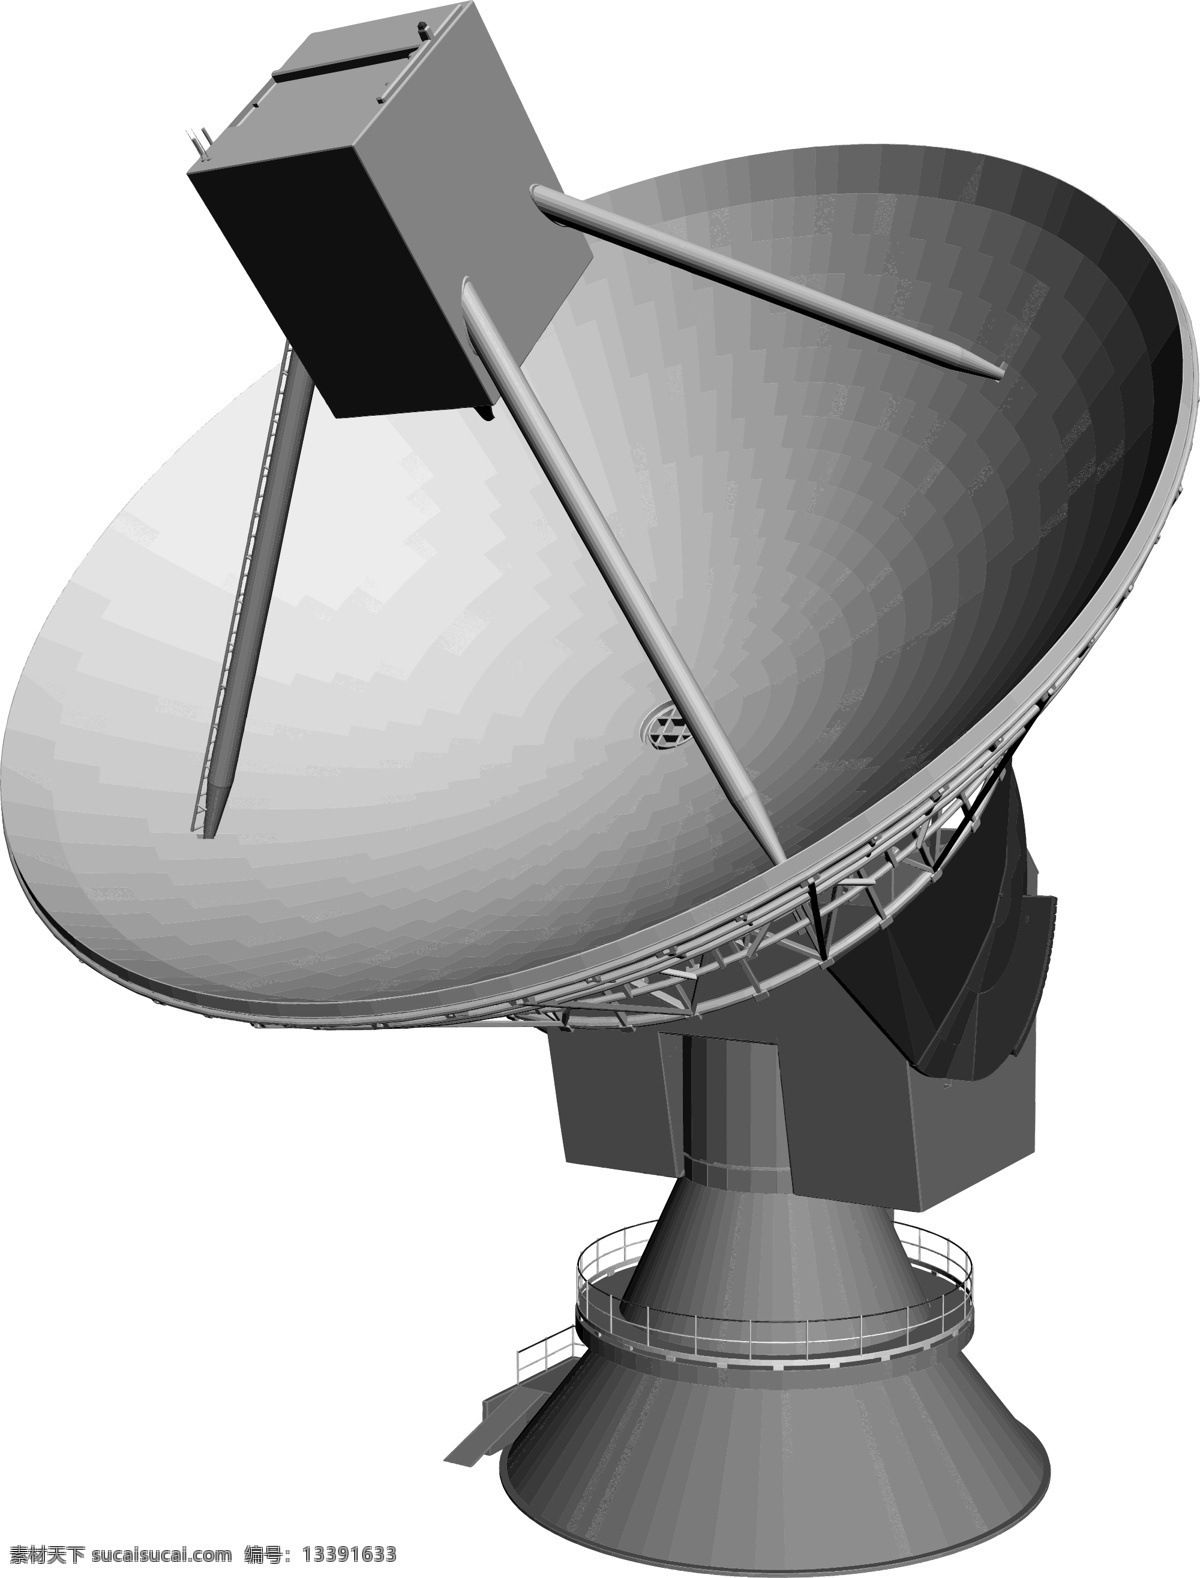 卫星接收器 天线卫星 天线 现代科技 通信 科学研究 矢量图 通讯科技 矢量